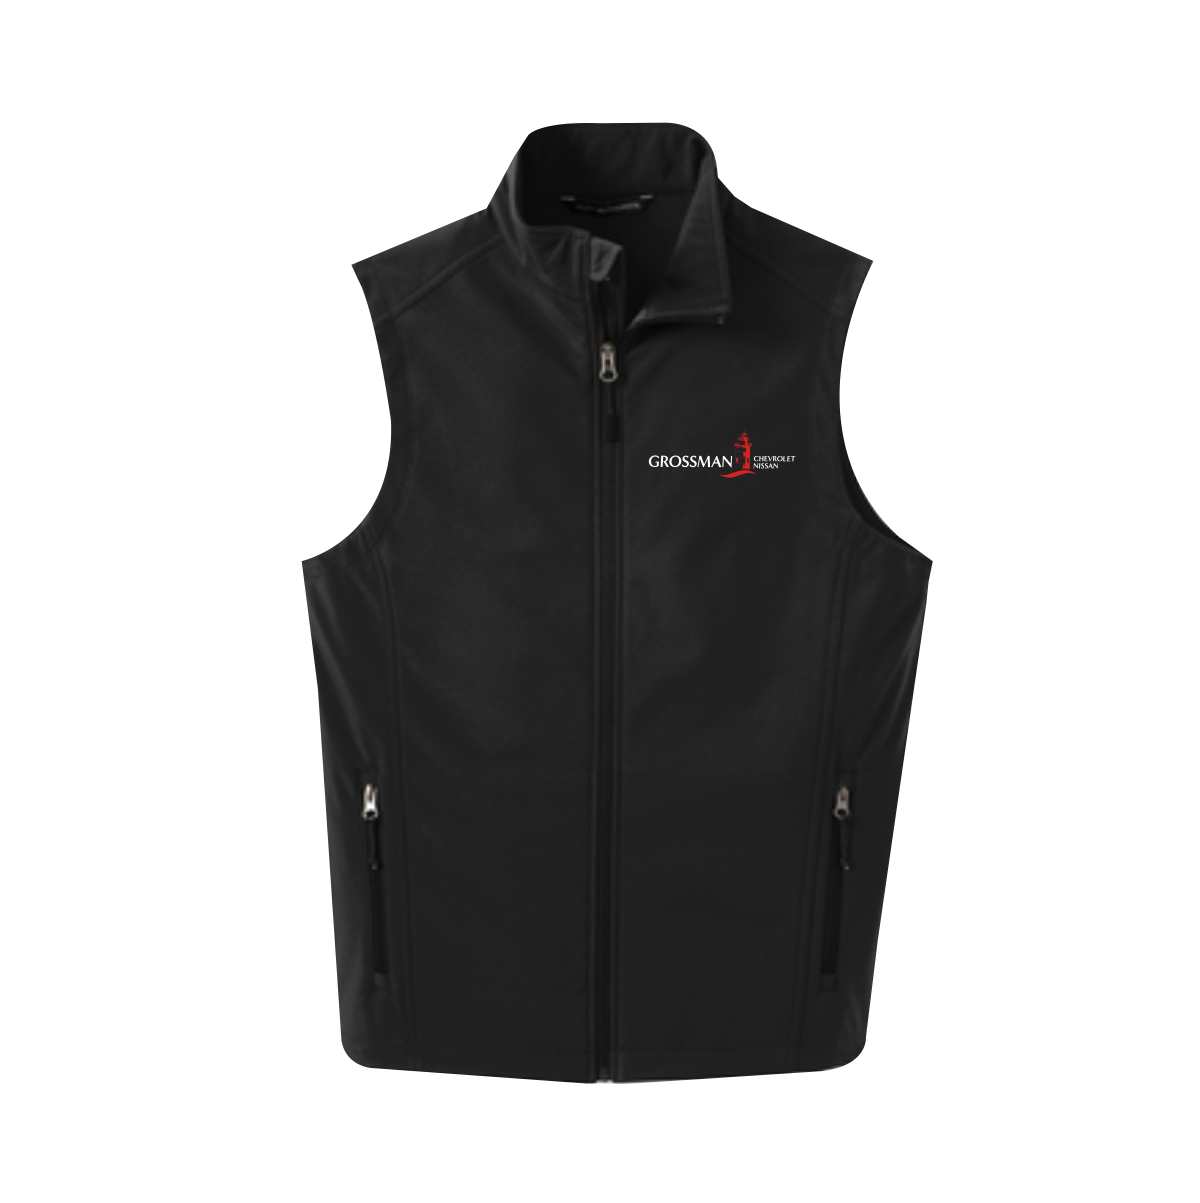 Grossman Autos – Core Soft Shell Vest – The League Brand